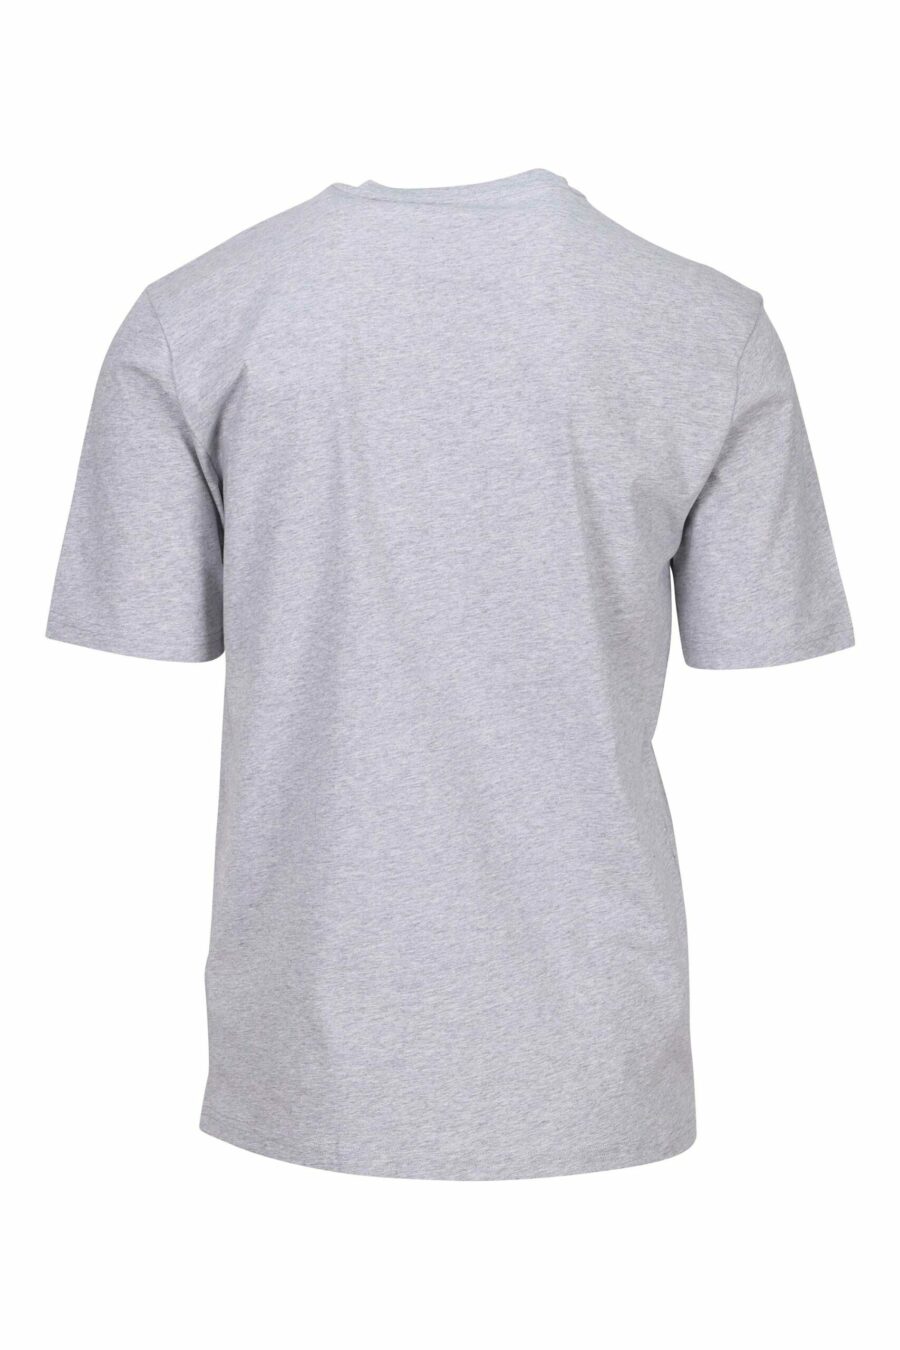 Camiseta gris con minilogo oso dibujo - 667113767741 1 scaled